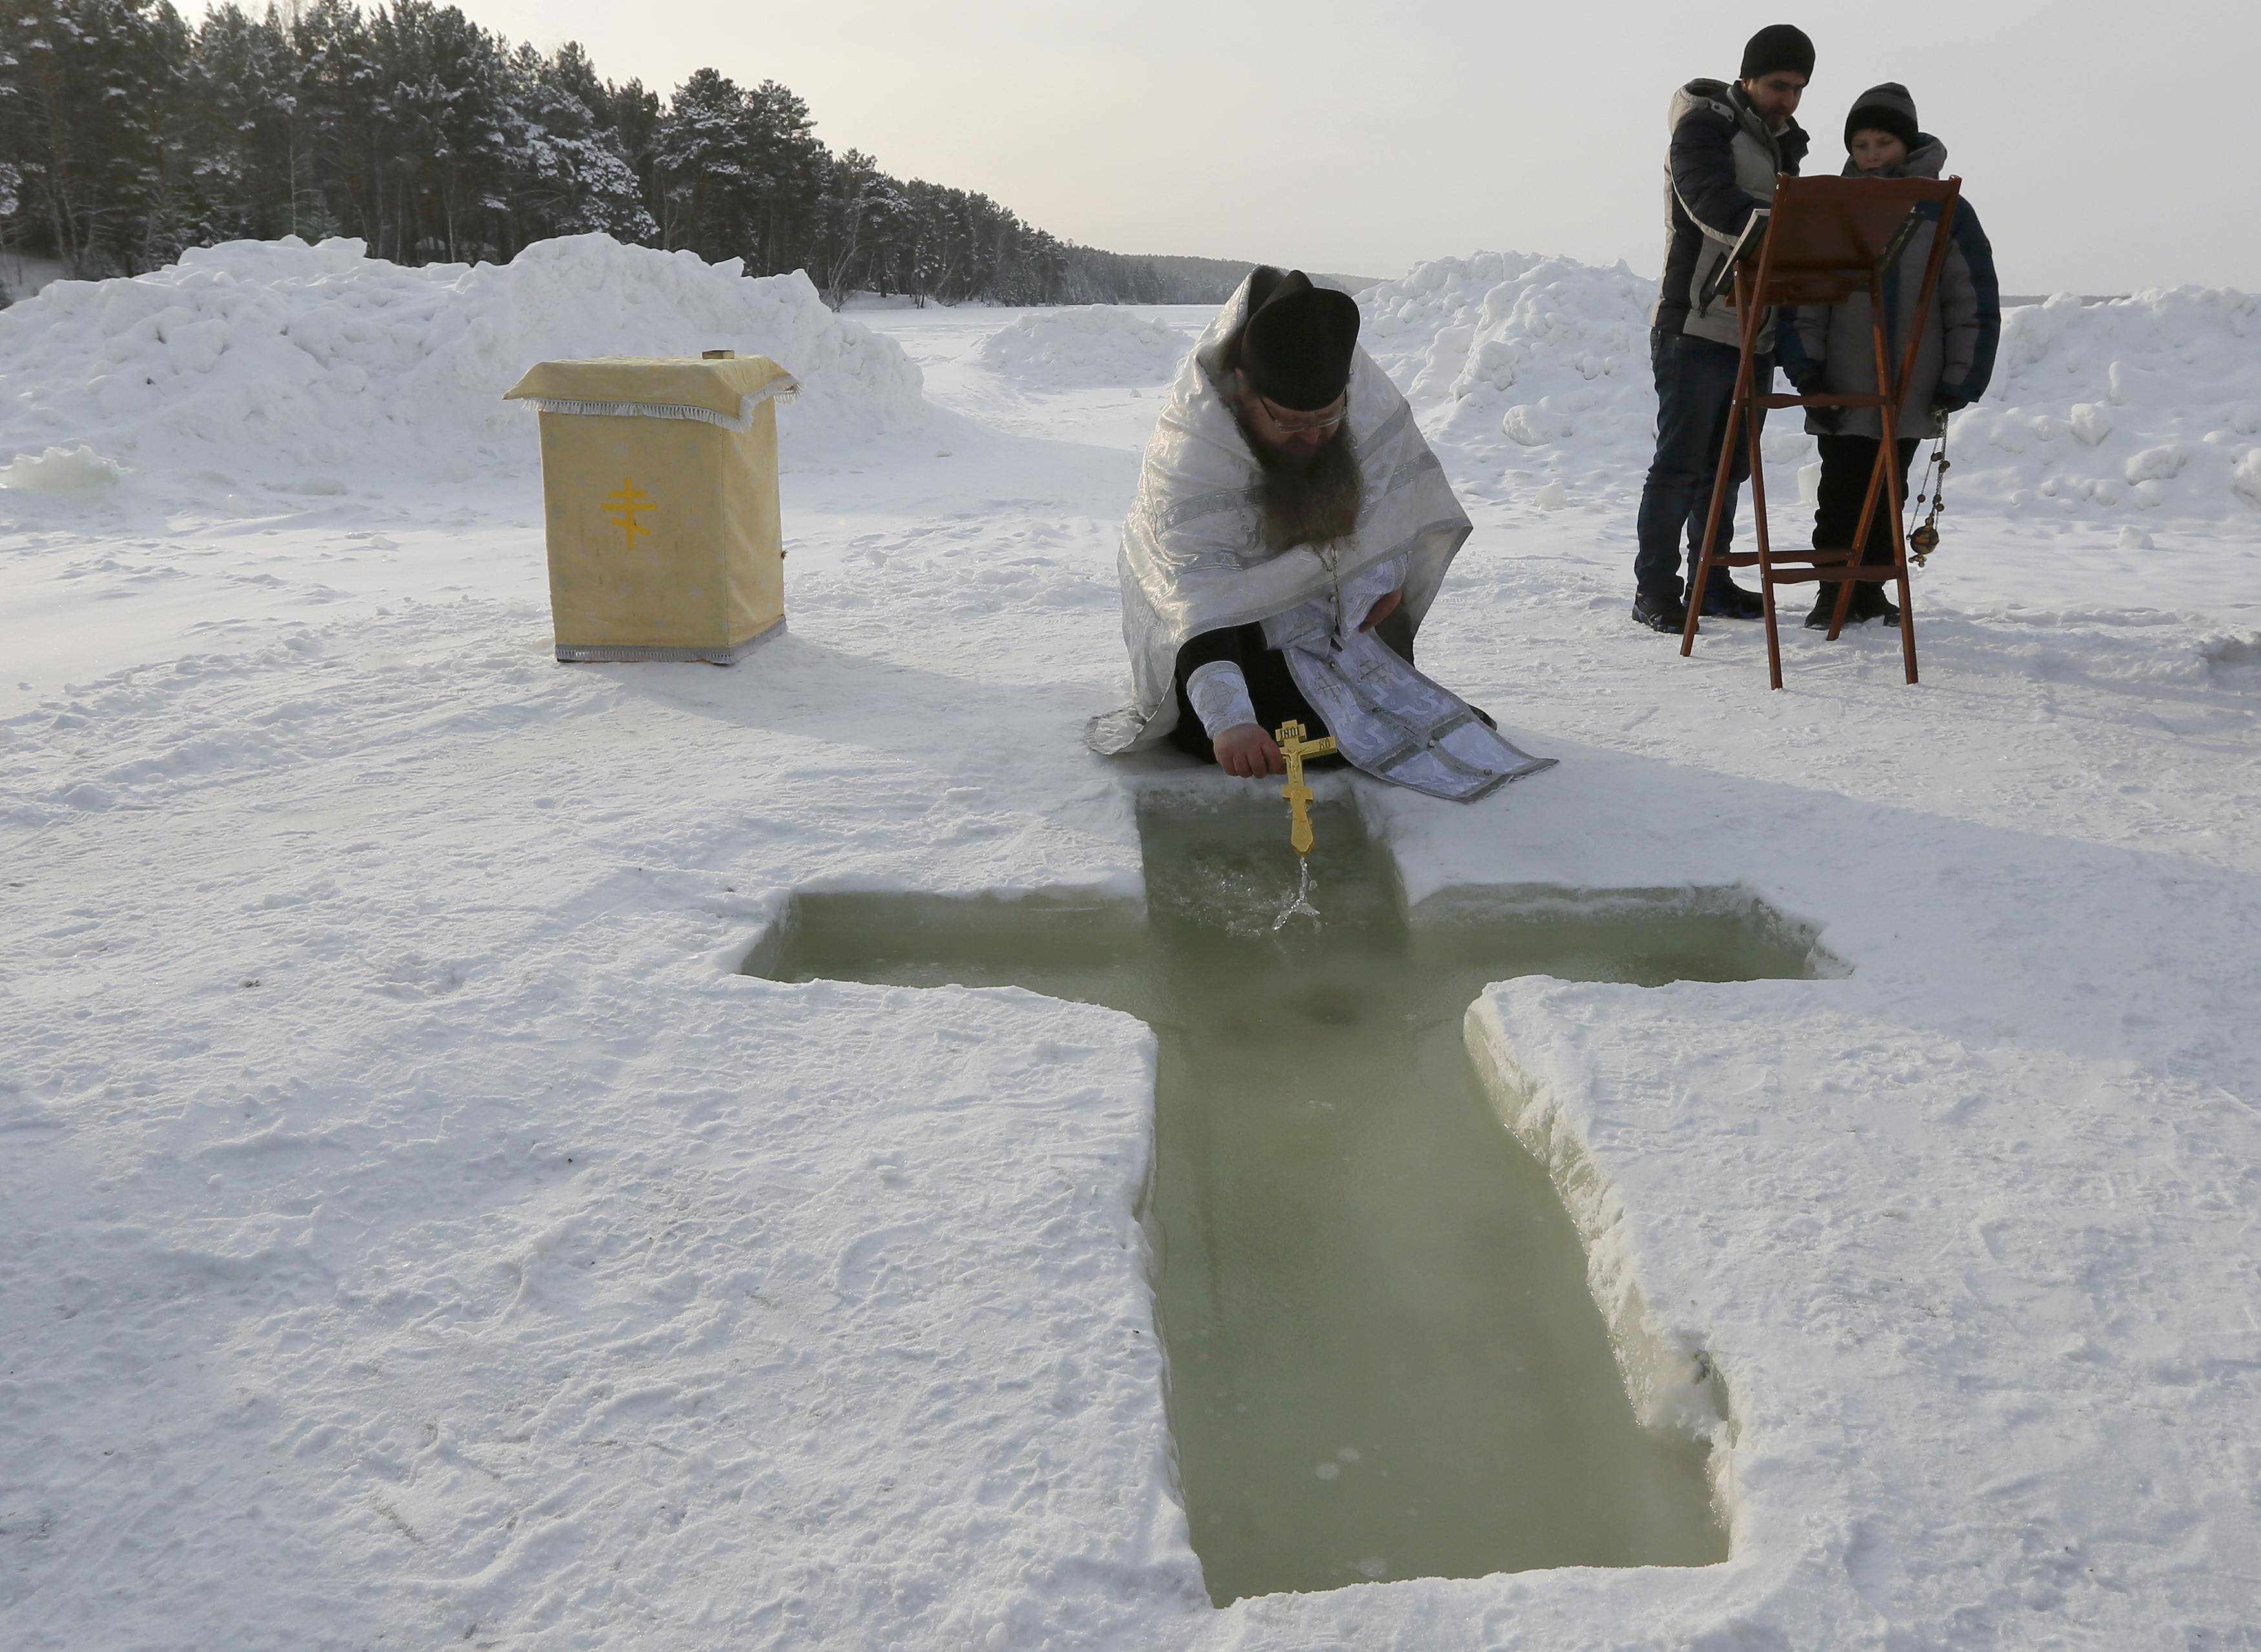 حفر الصليب فى الجليد فى روسيا